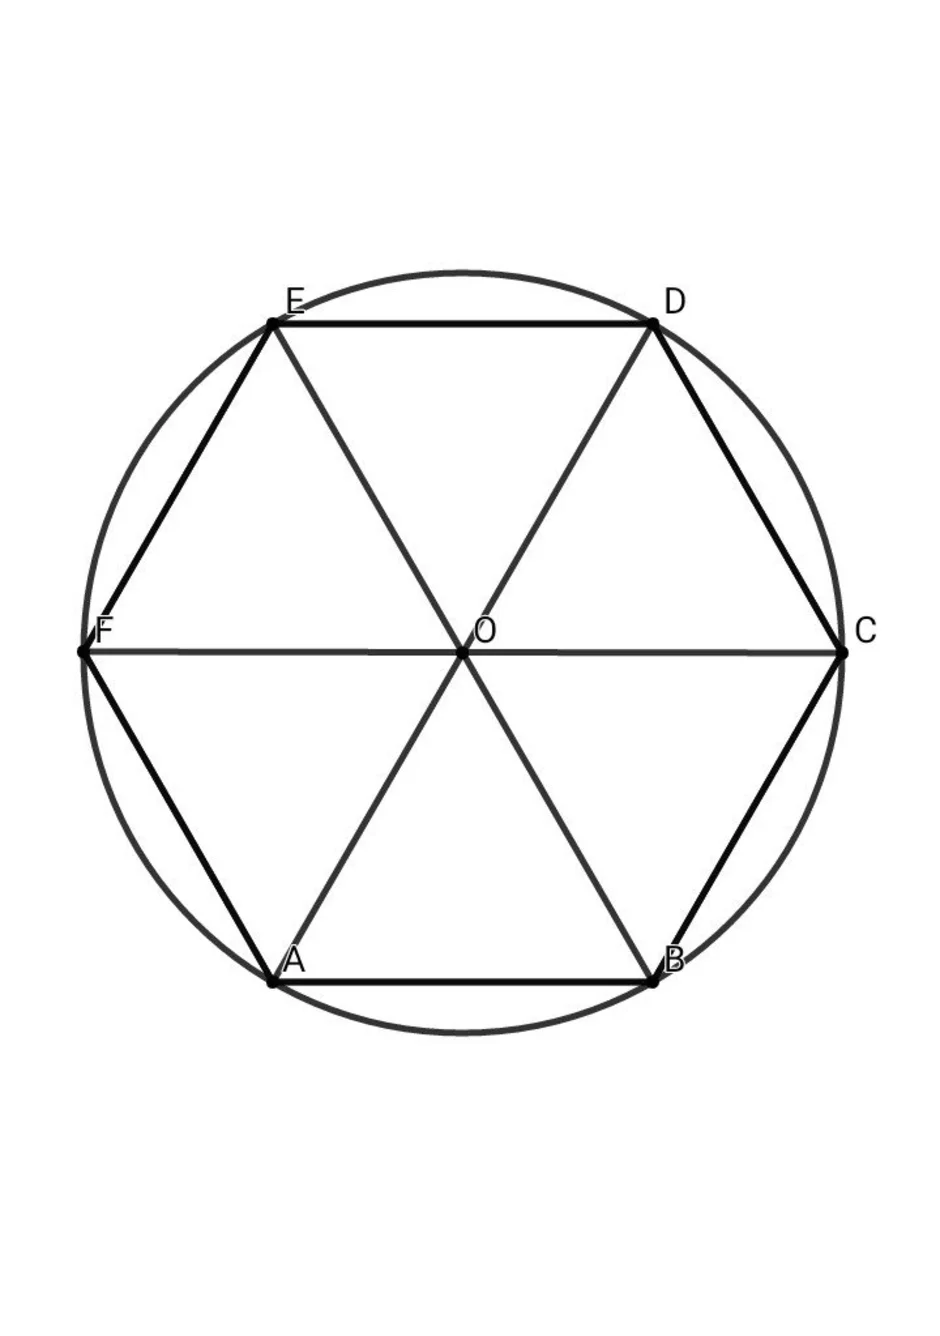 Круг правильная форма. Правильный шестиугольник вписанный в окружность. Круг вписанный в правильный шестиугольник. Правильный 6 угольник вписанный в окружность. Правильный шестнадцатиугольник вписанный в окружность.